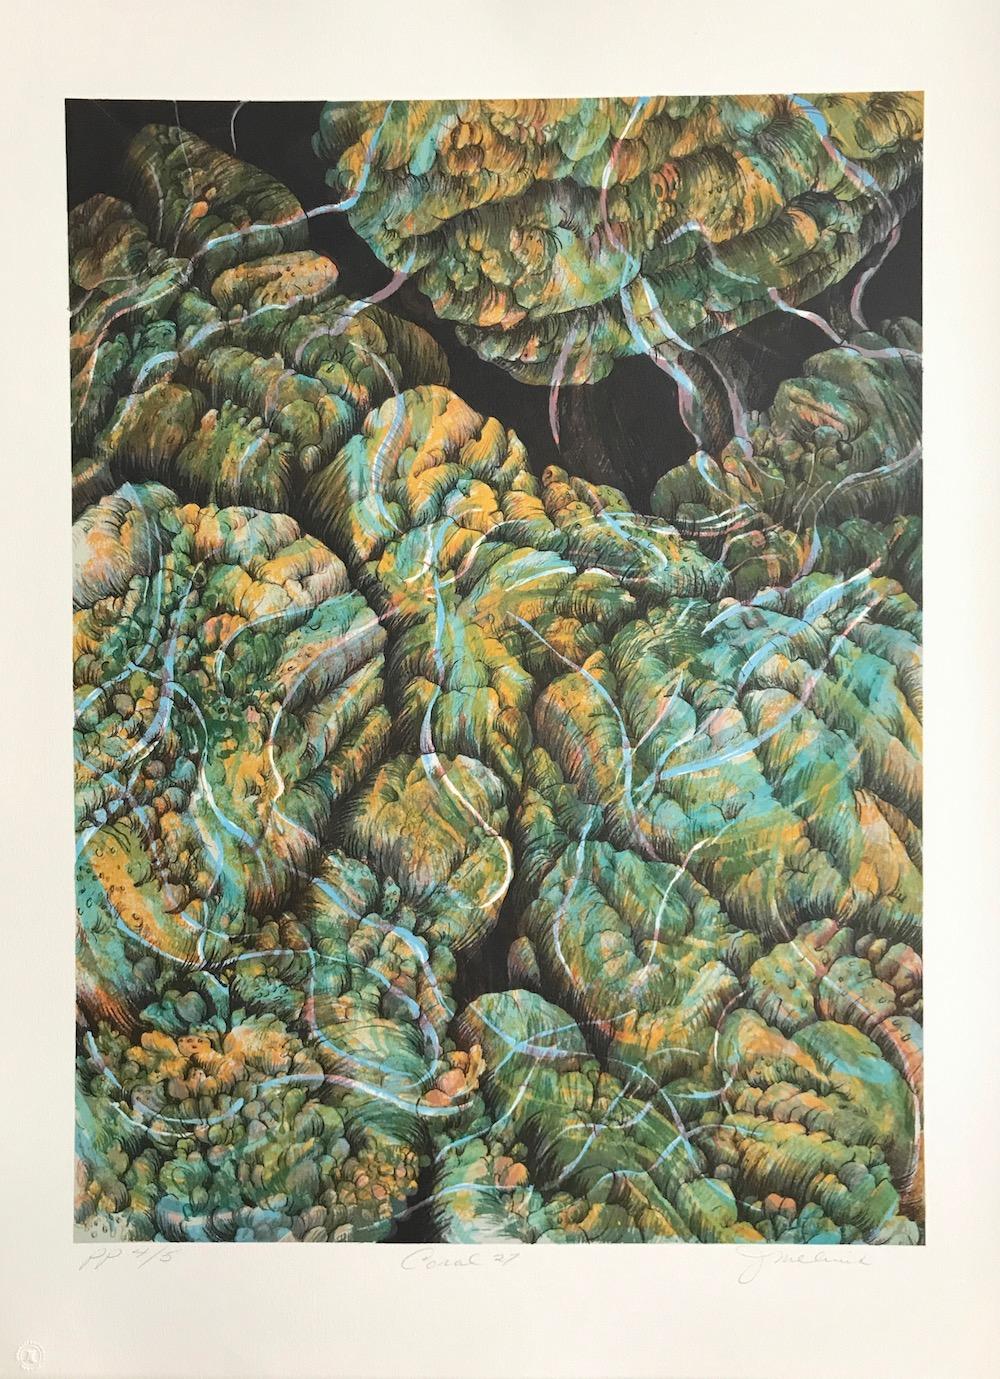 Coral 27 ist eine handgezeichnete Original-Lithografie der New Yorker Künstlerin Joan Melnick. Inspiriert von der zerbrechlichen Schönheit der Riffe mit ihren exotischen Formen und leuchtenden Farben, ist Coral 27 eine abstrakte Komposition aus